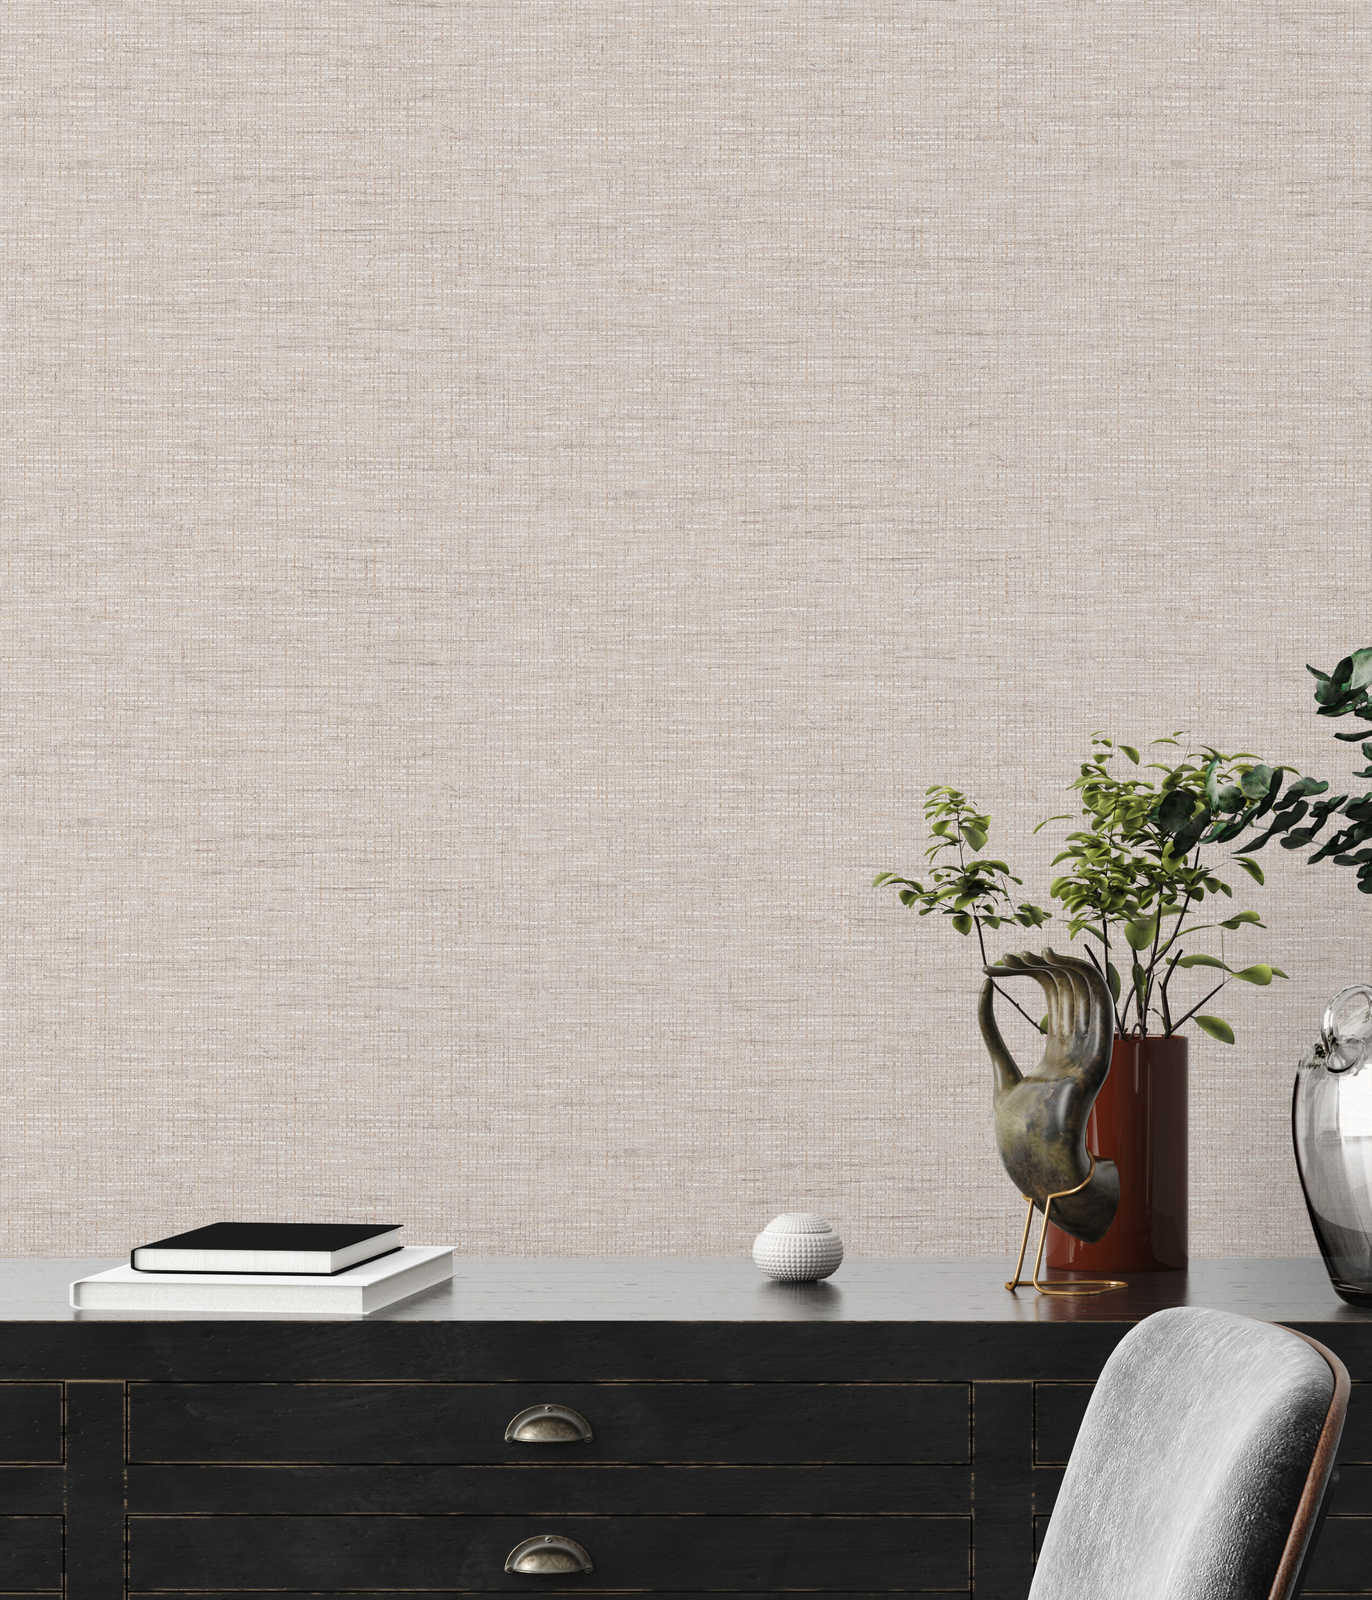             Non-woven wallpaper ethno design grey with raffia pattern
        